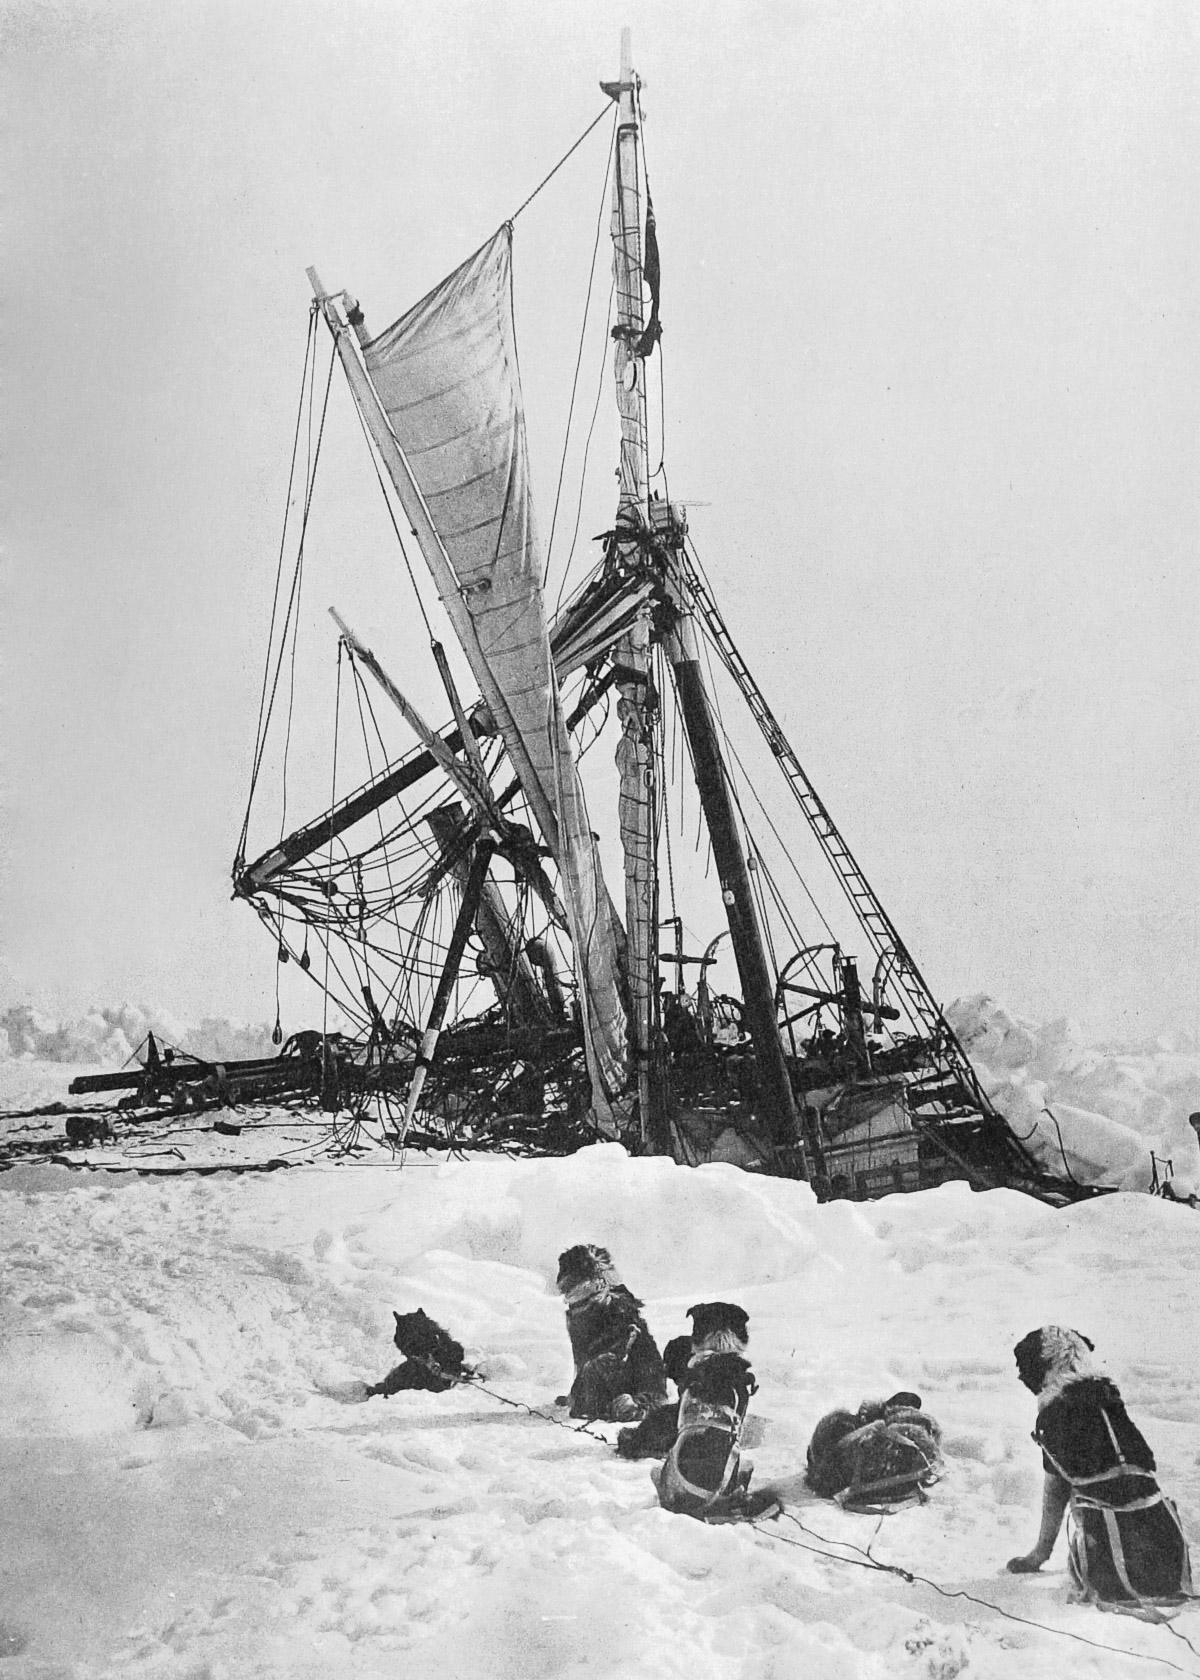 The Endurance: legendara navă pierdută a lui Shackleton a fost descoperită! 4